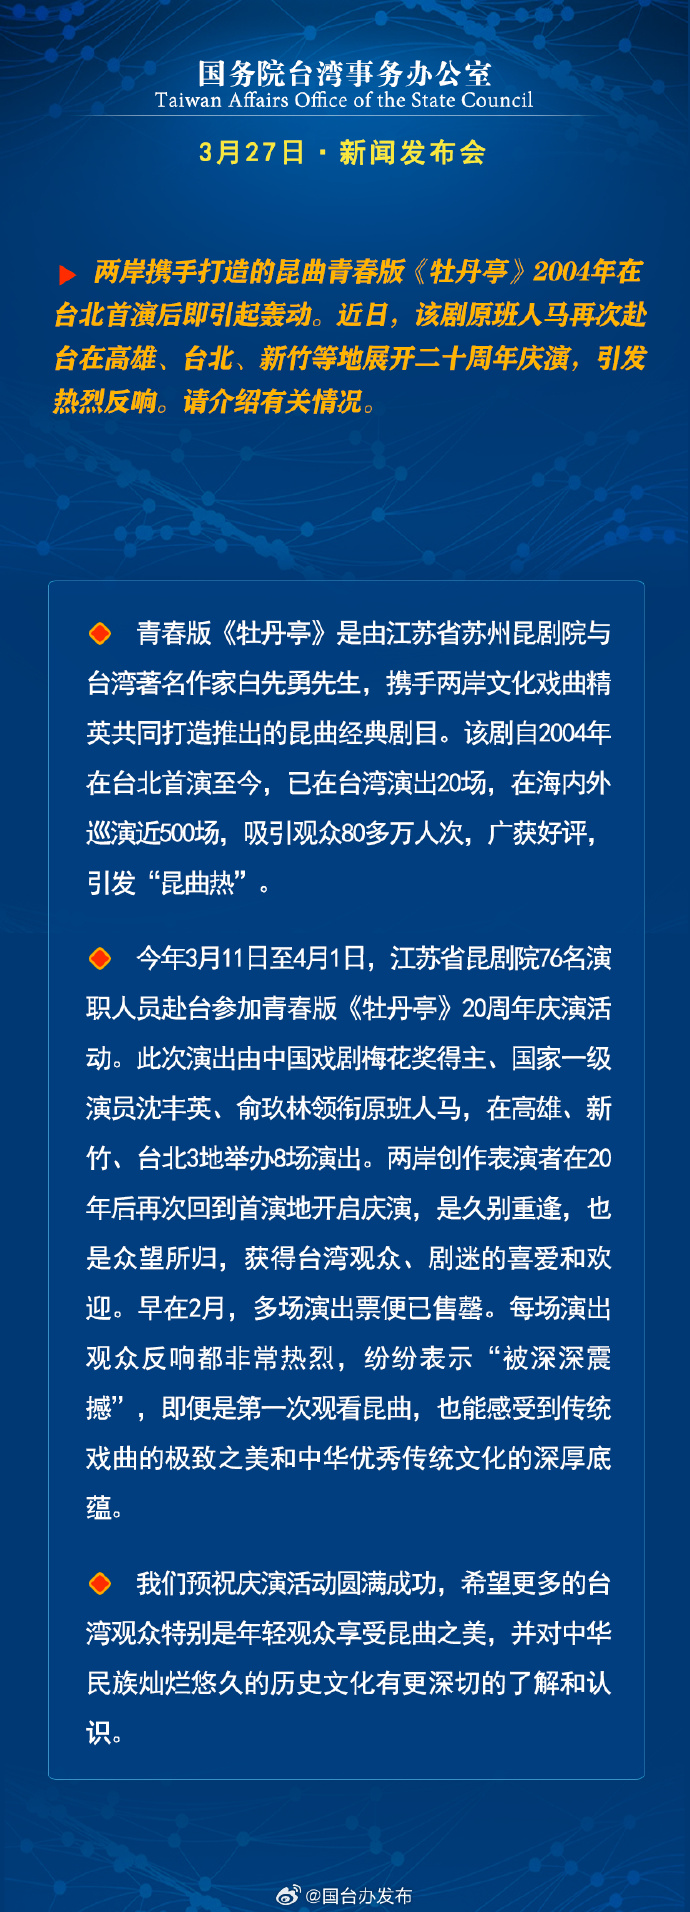 國務院台灣事務辦公室3月27日·新聞發佈會